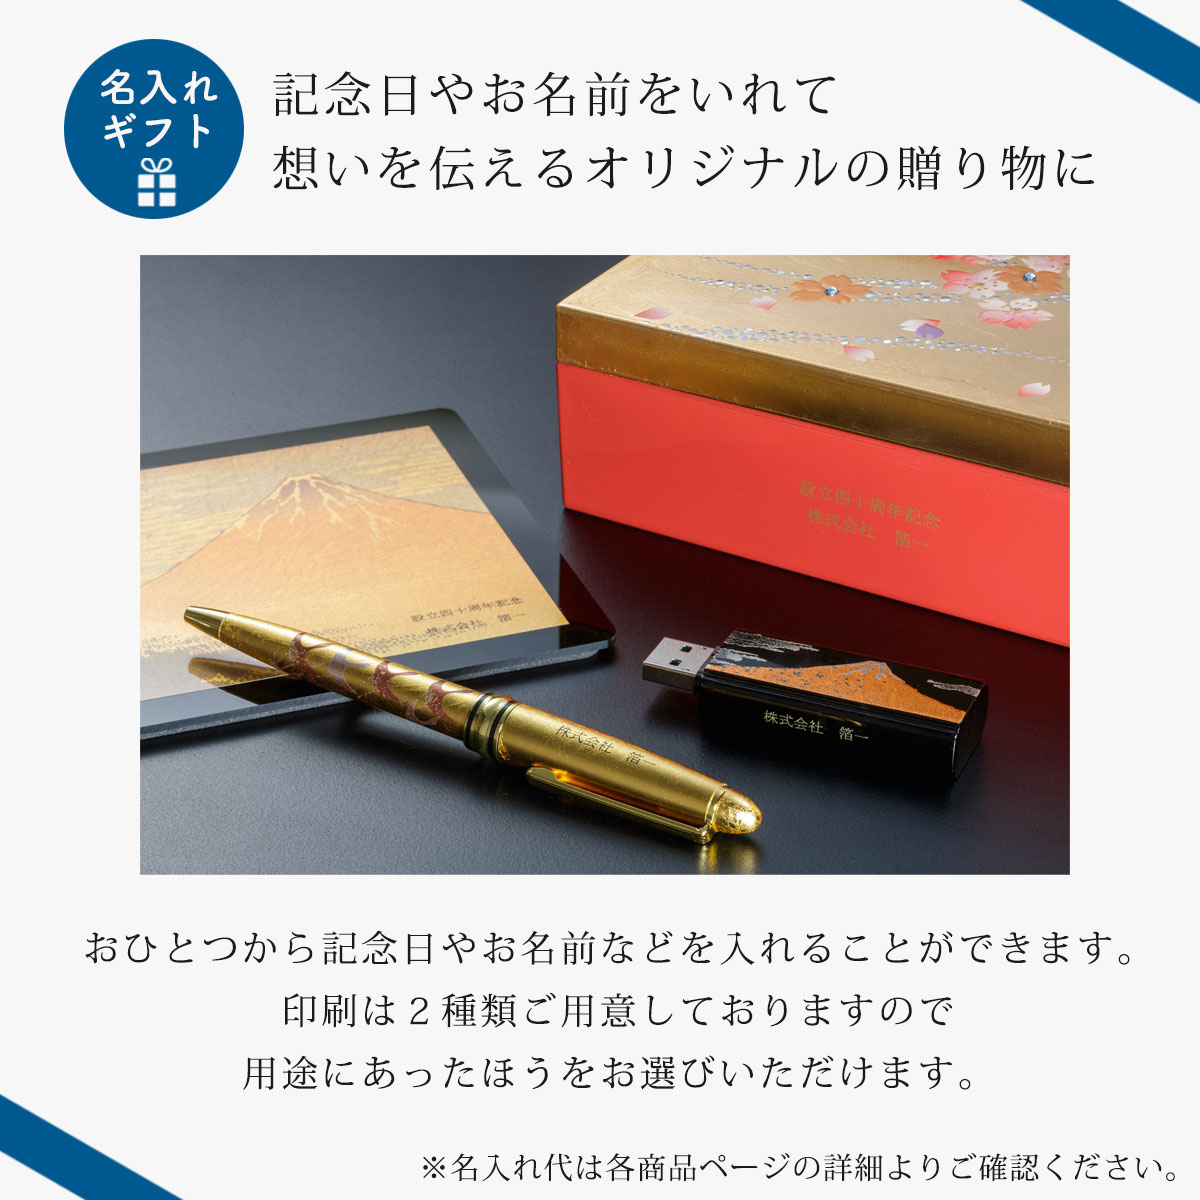 SHIKISAI ボールペン KODAI 古代 プレゼント 長寿祝い 金沢金箔の箔一| HAKUICHI STYLE